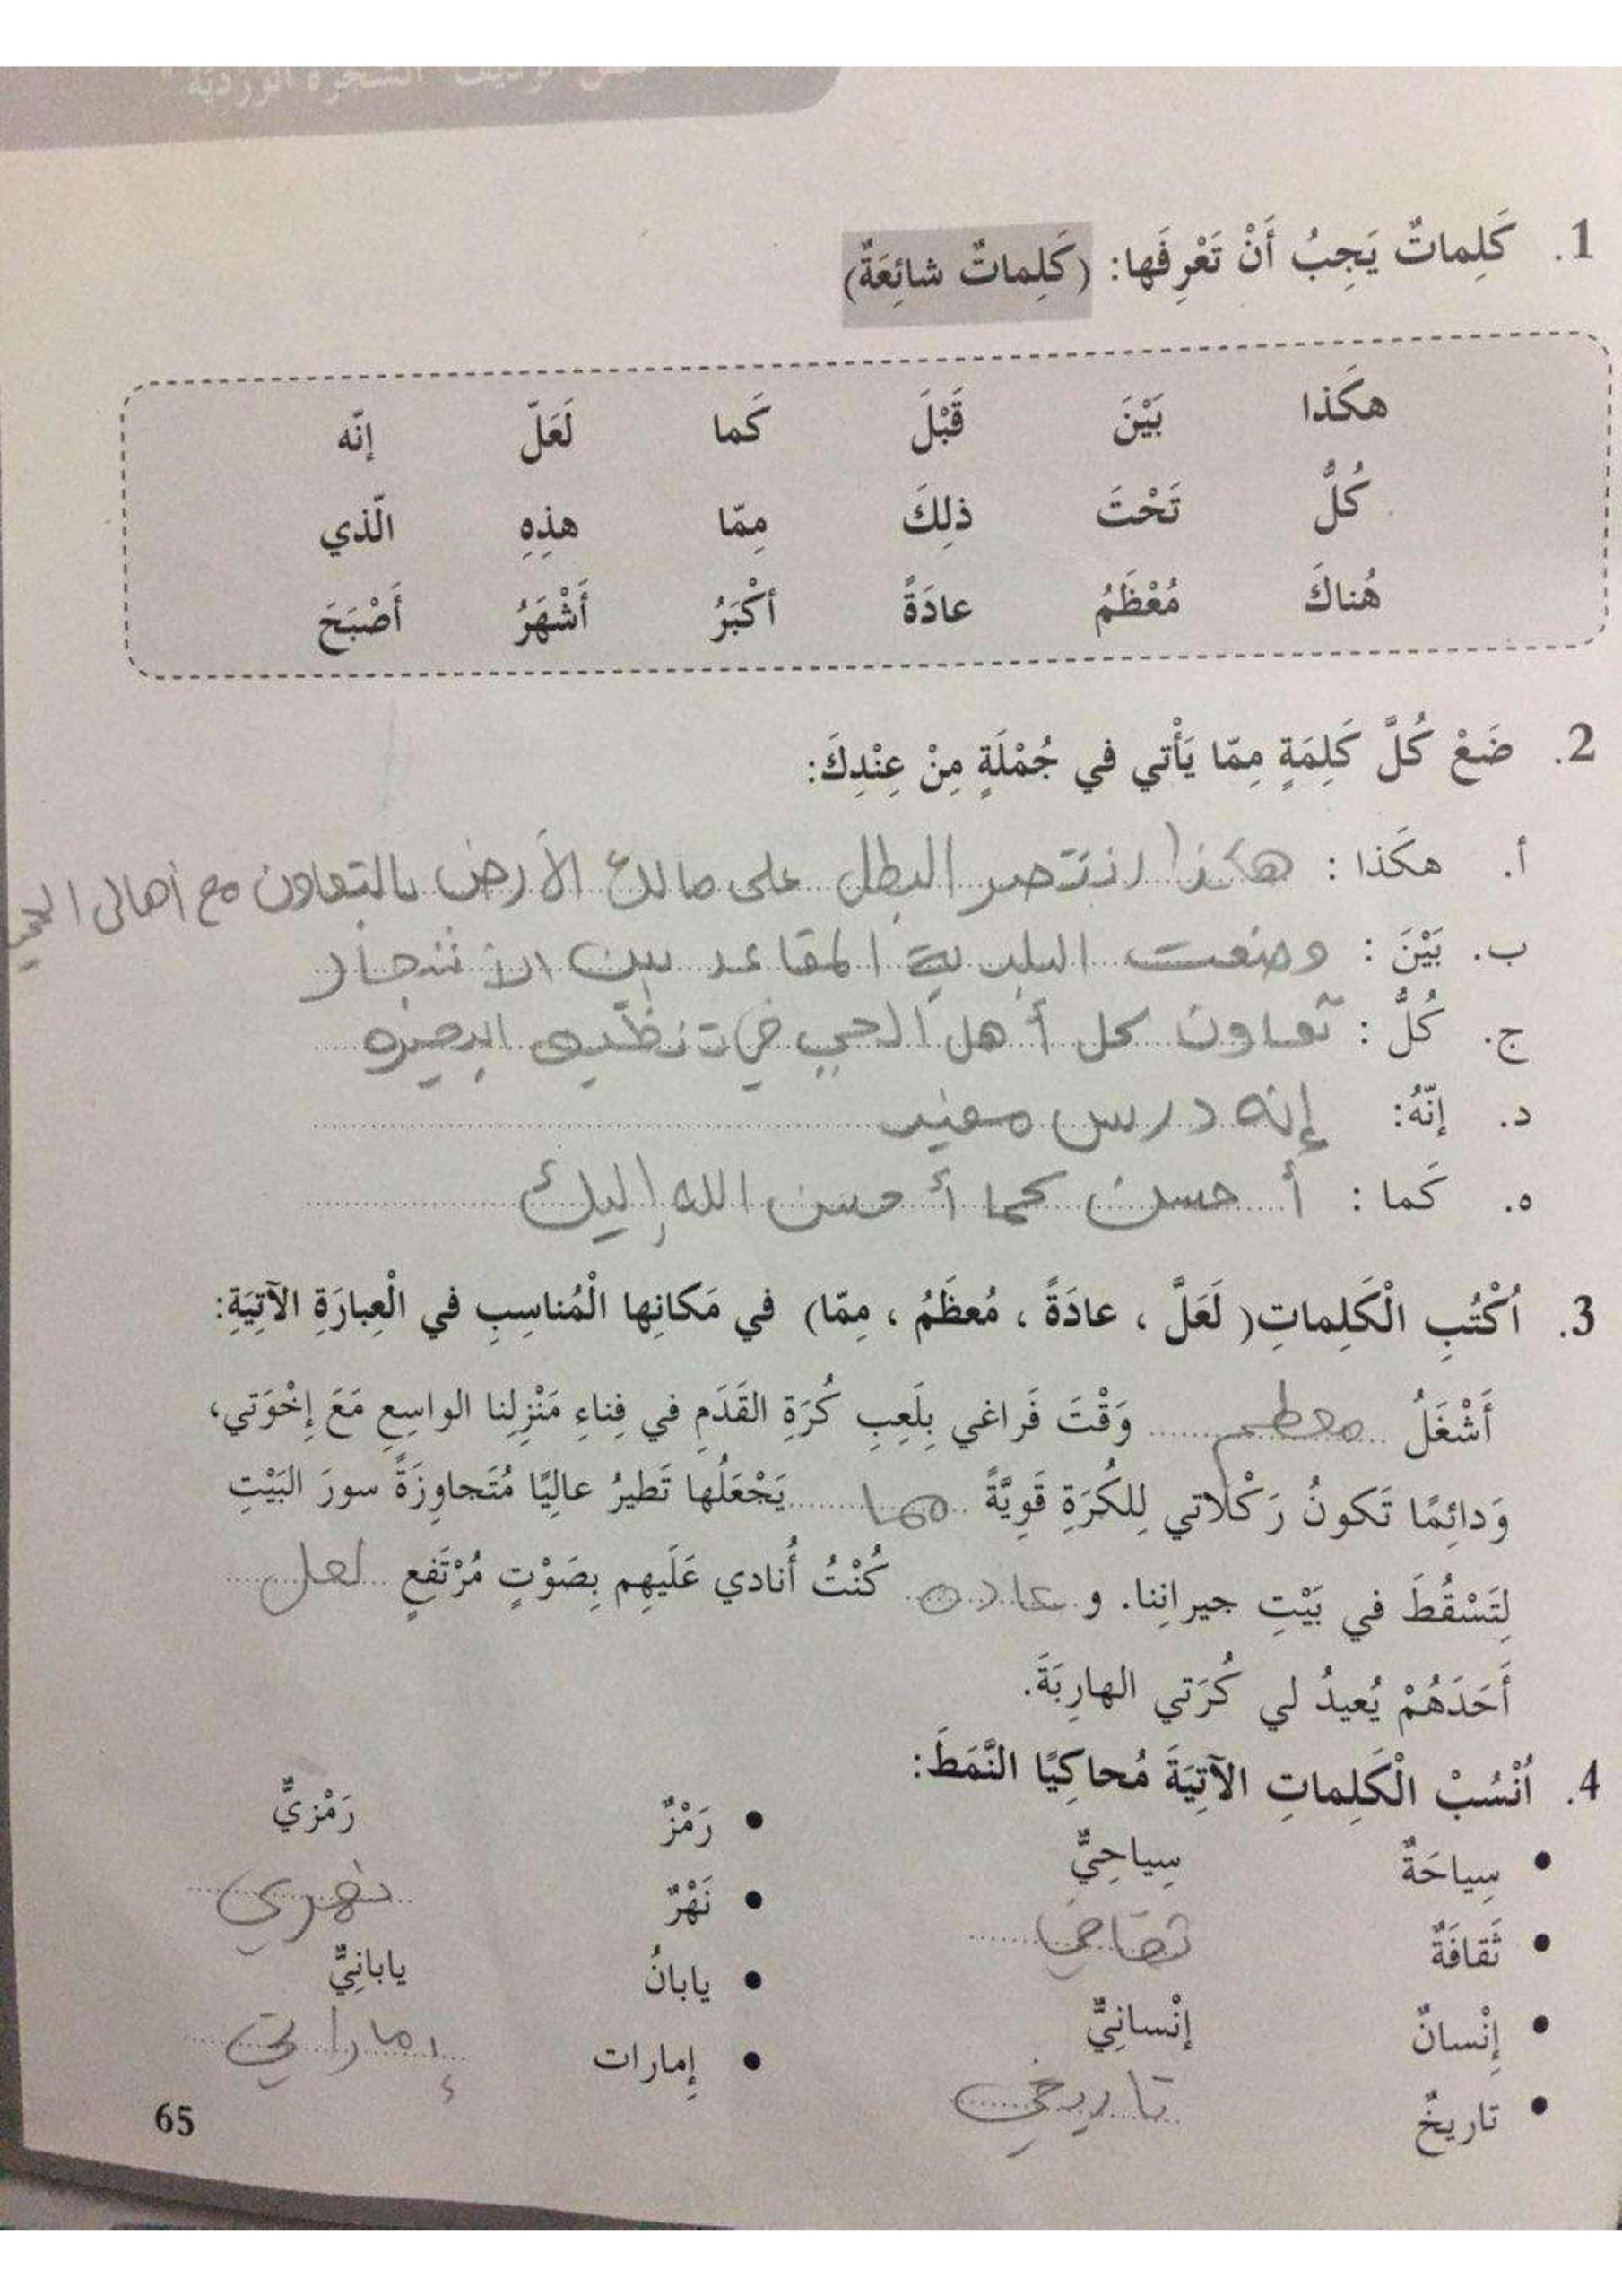 كتاب النشاط درس شجرتي الوردية مع الاجابات للصف الخامس مادة اللغة العربية 